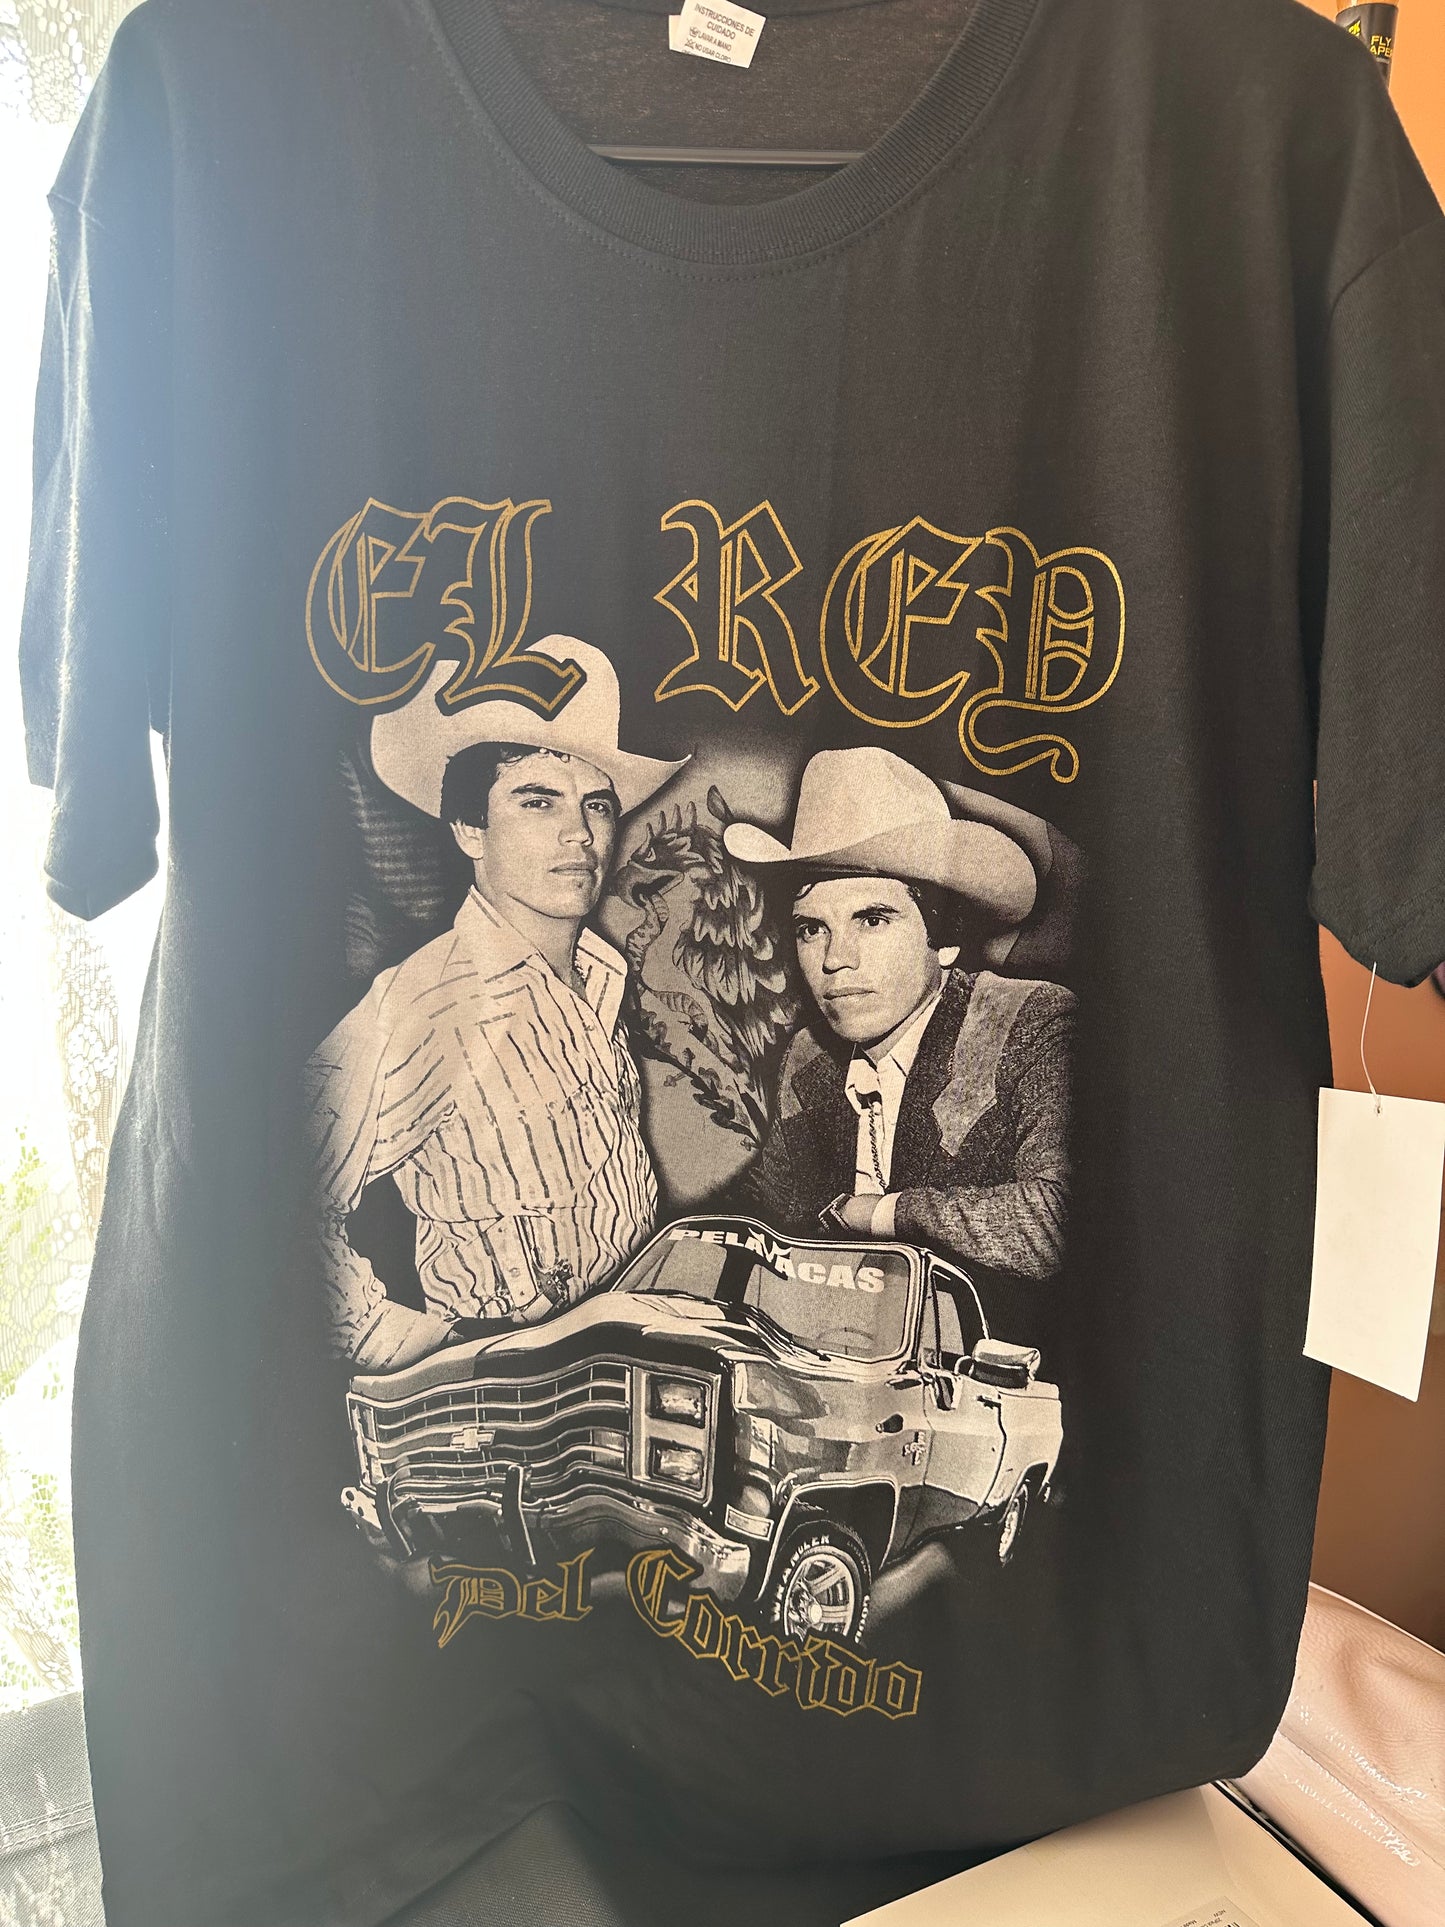 El Rey T-Shirt